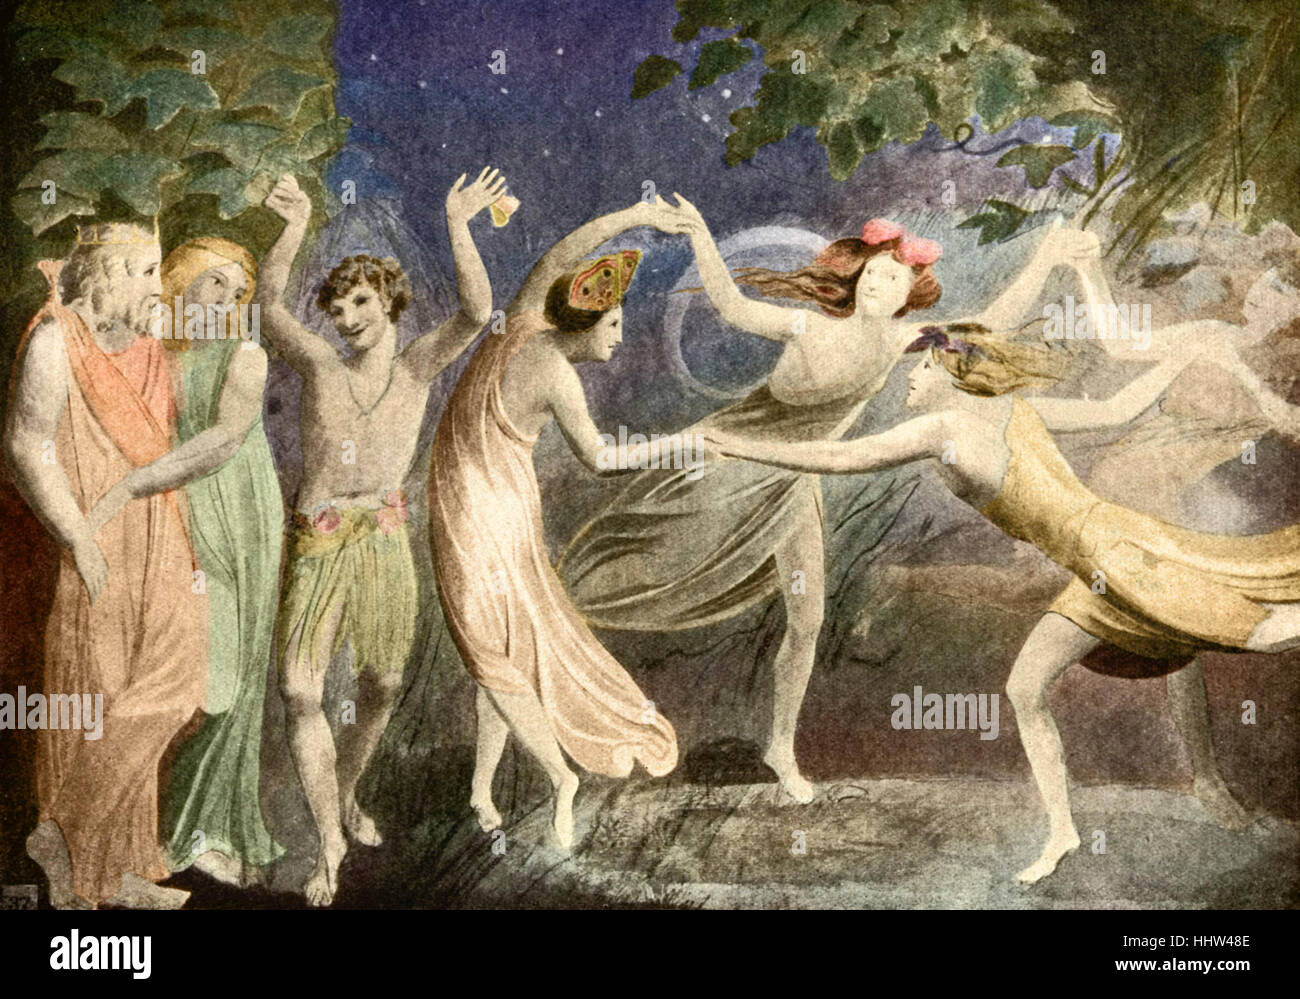 A Midsummer Night's Dream de William Shakespeare, acto IV Escena I - Oberon, Titania y Puck de hadas bailando, ilustración Foto de stock